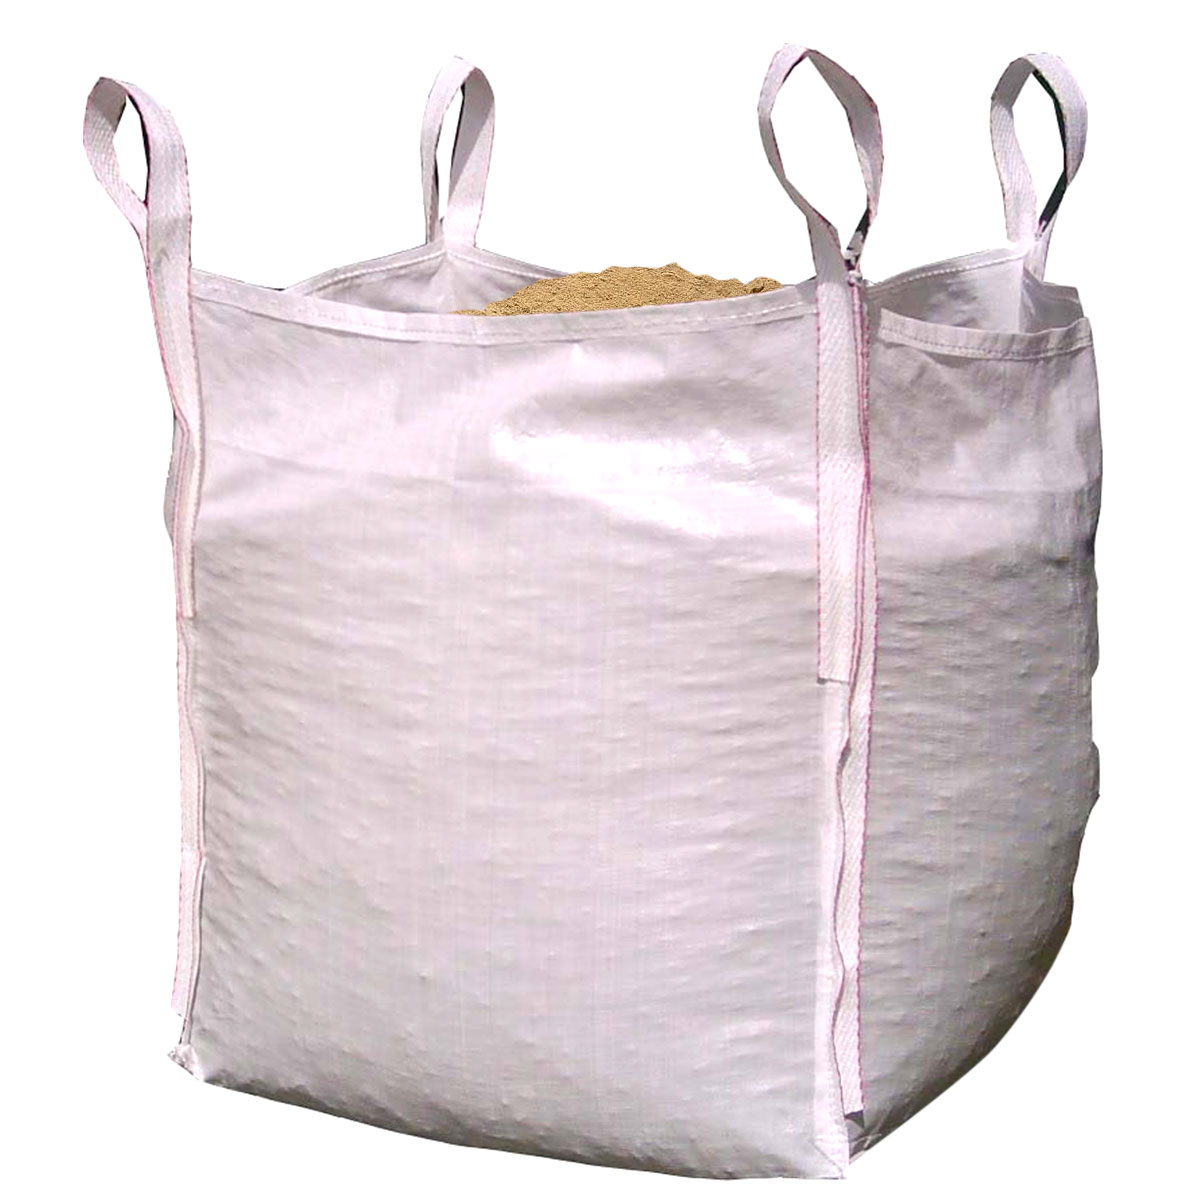 1-ton bulka bags with sand